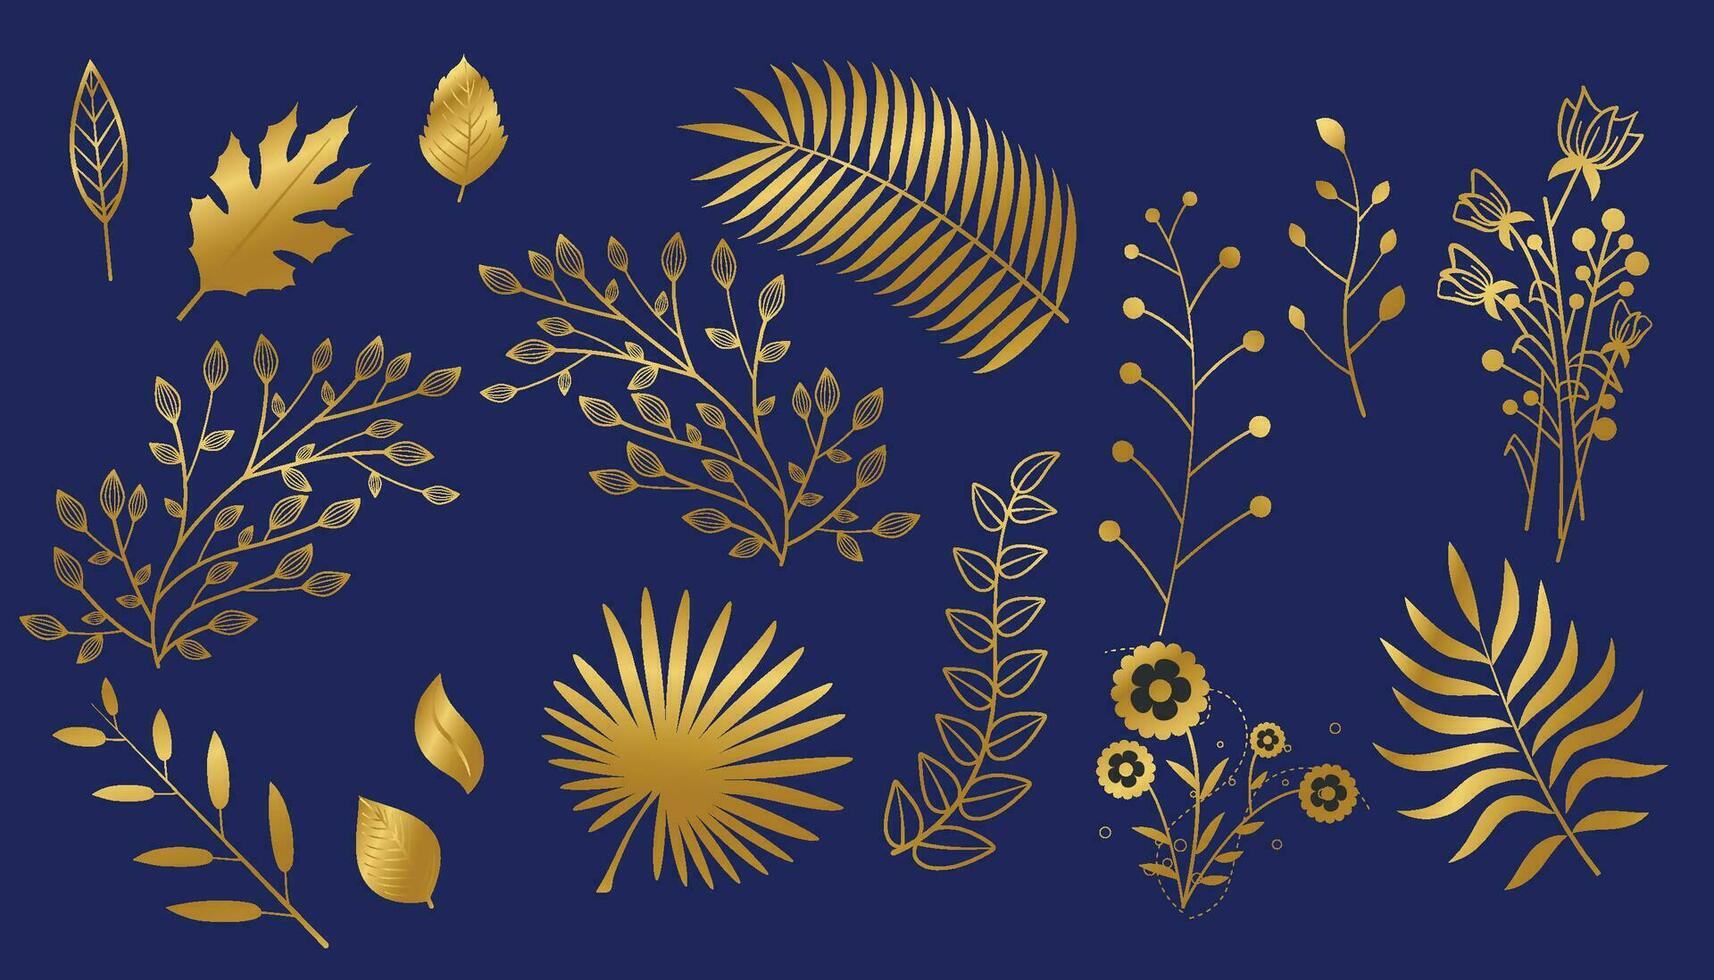 oro rama hoja elemento colocar. mano dibujado bosquejo garabatear dorado hojas floral elemento para Boda fondo, elegante diseño. vector ilustración.